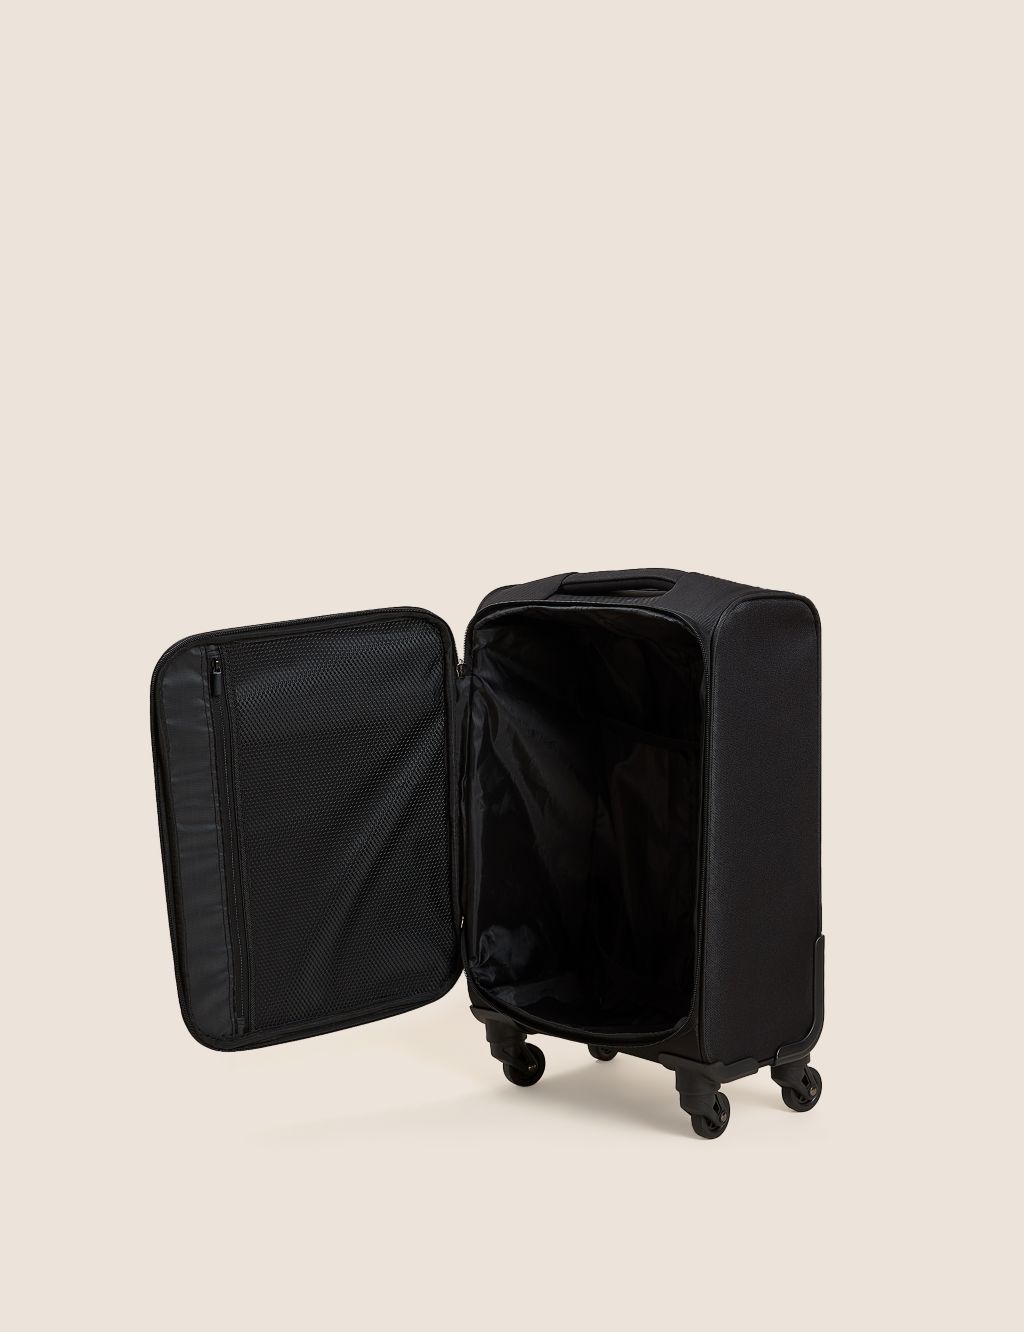 Palma 4 Wheel Soft Cabin Suitcase image 6